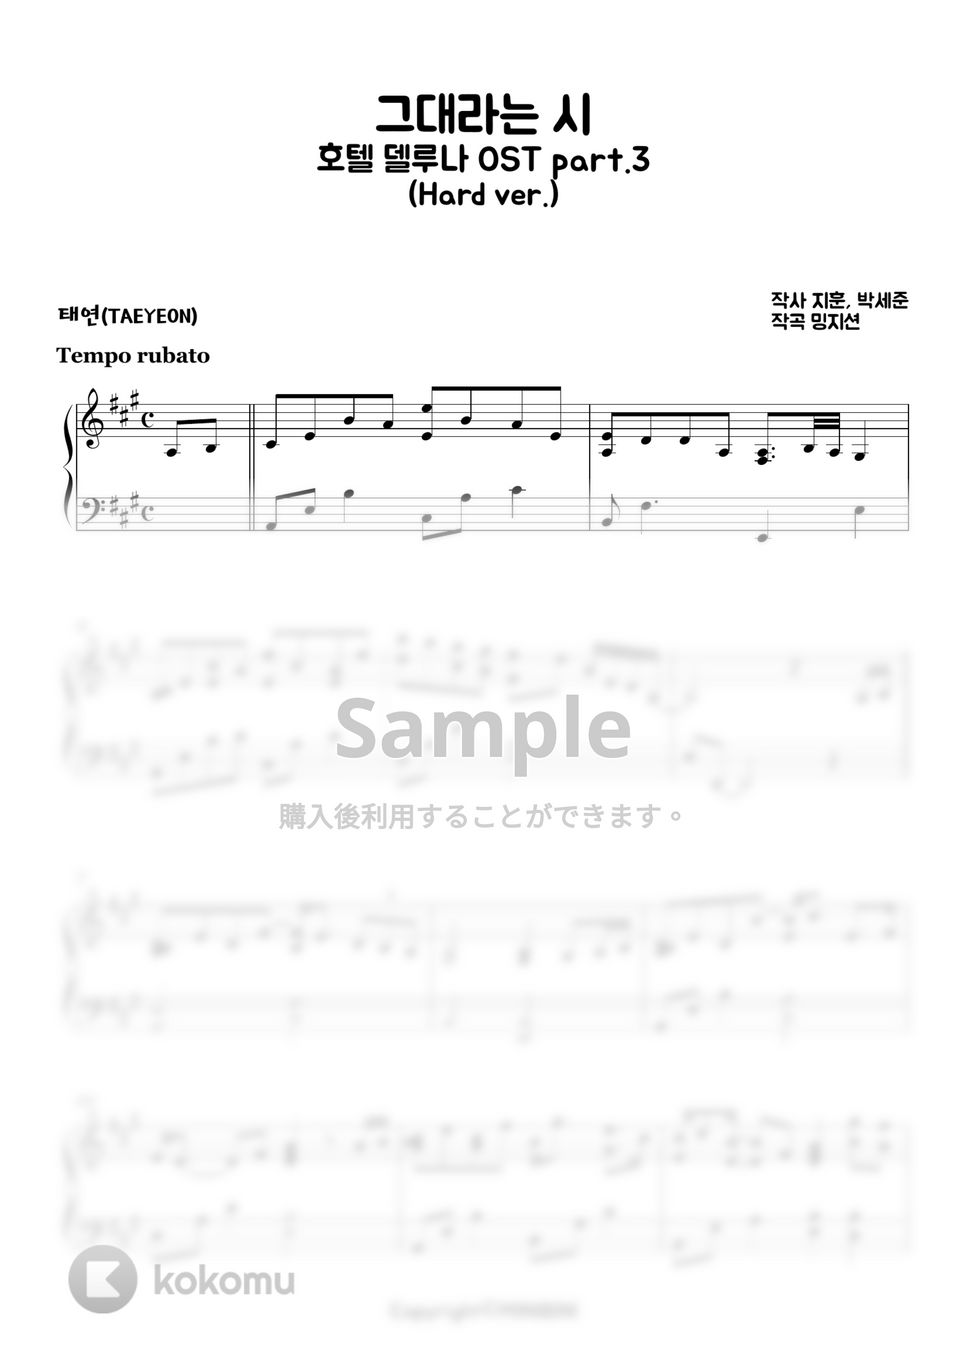 テヨン (TAEYEON) - あなたという詩(A Poem Titled You) (Hard ver.) by MINIBINI